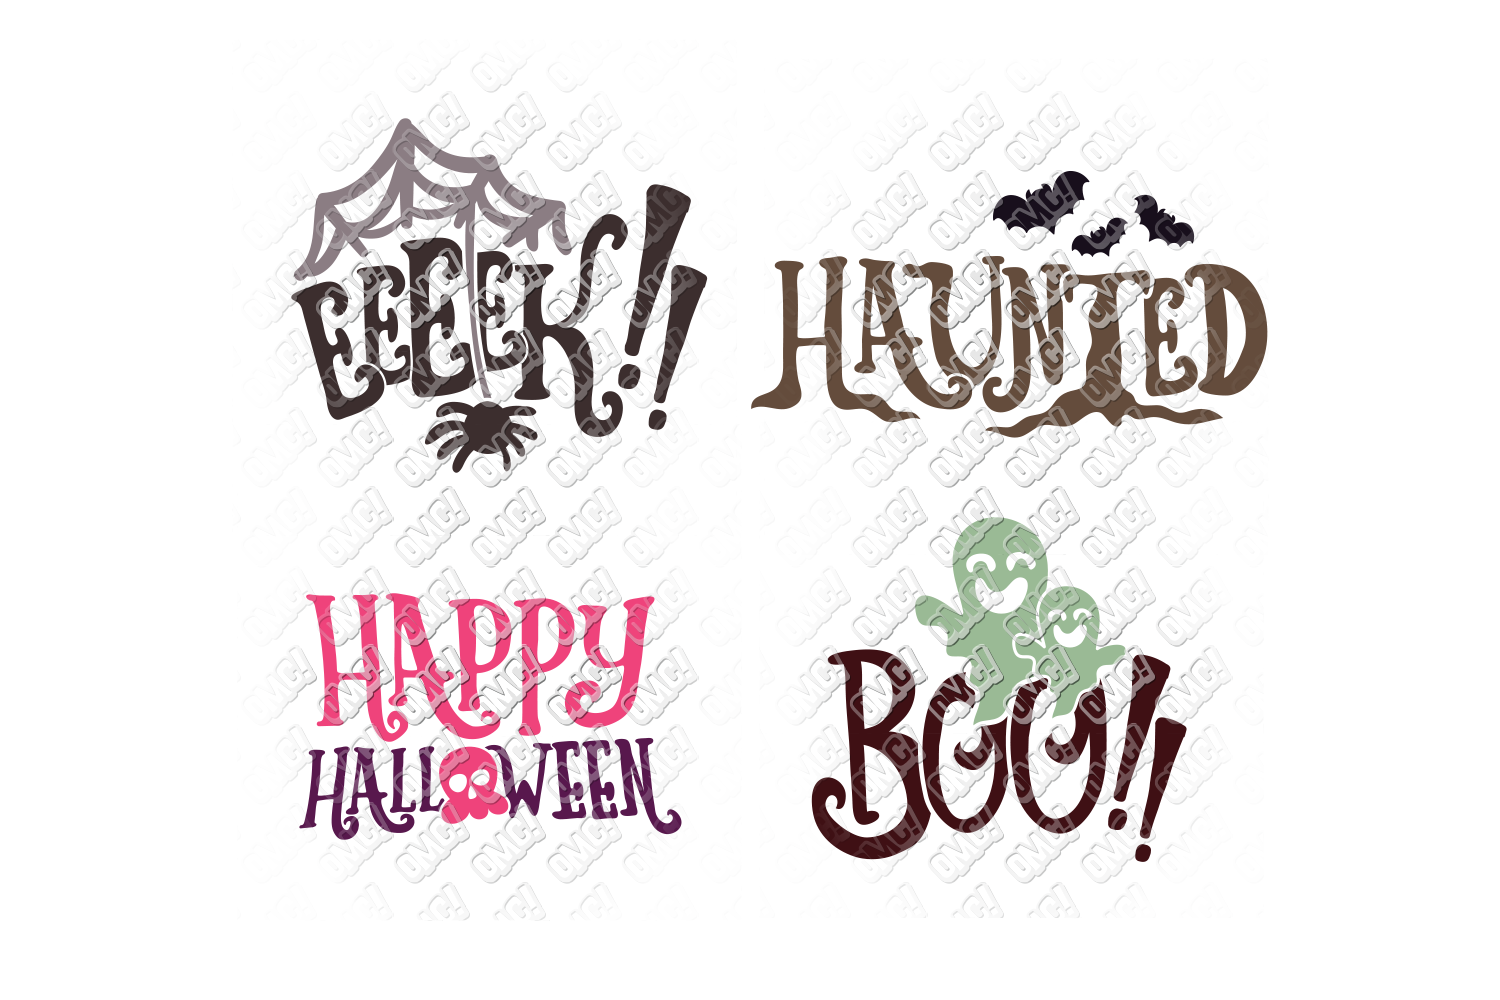 Download Halloween Words SVG Bundle in SVG, DXF, PNG, EPS, JPEG ...